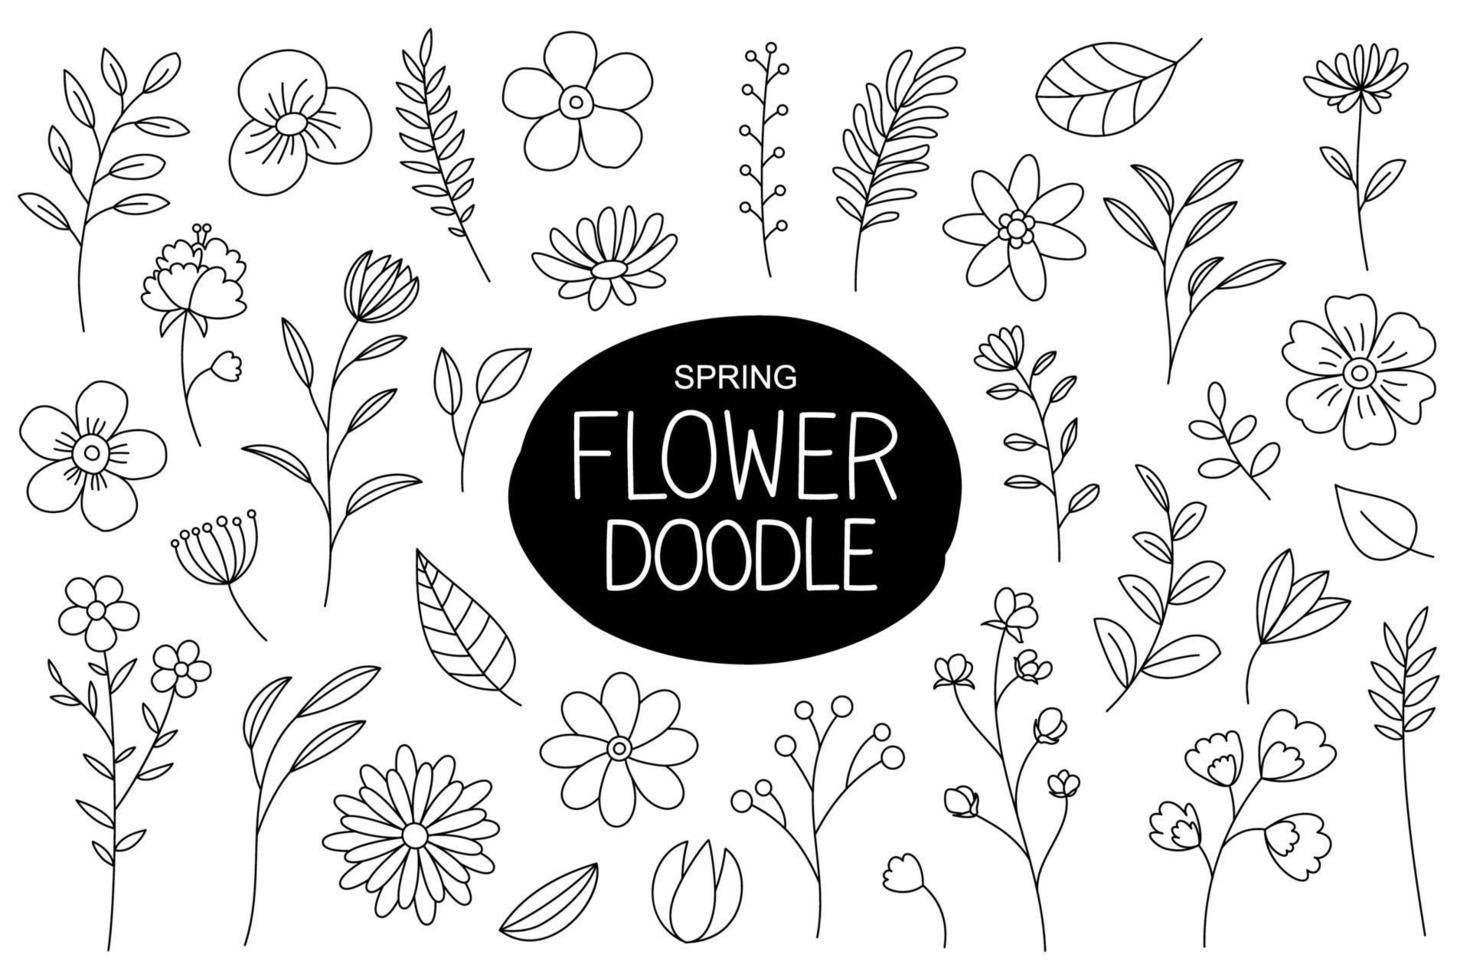 fiori di primavera doodle in stile disegnato a mano. elementi floreali e foglie con collezione di fiori primaverili. vettore